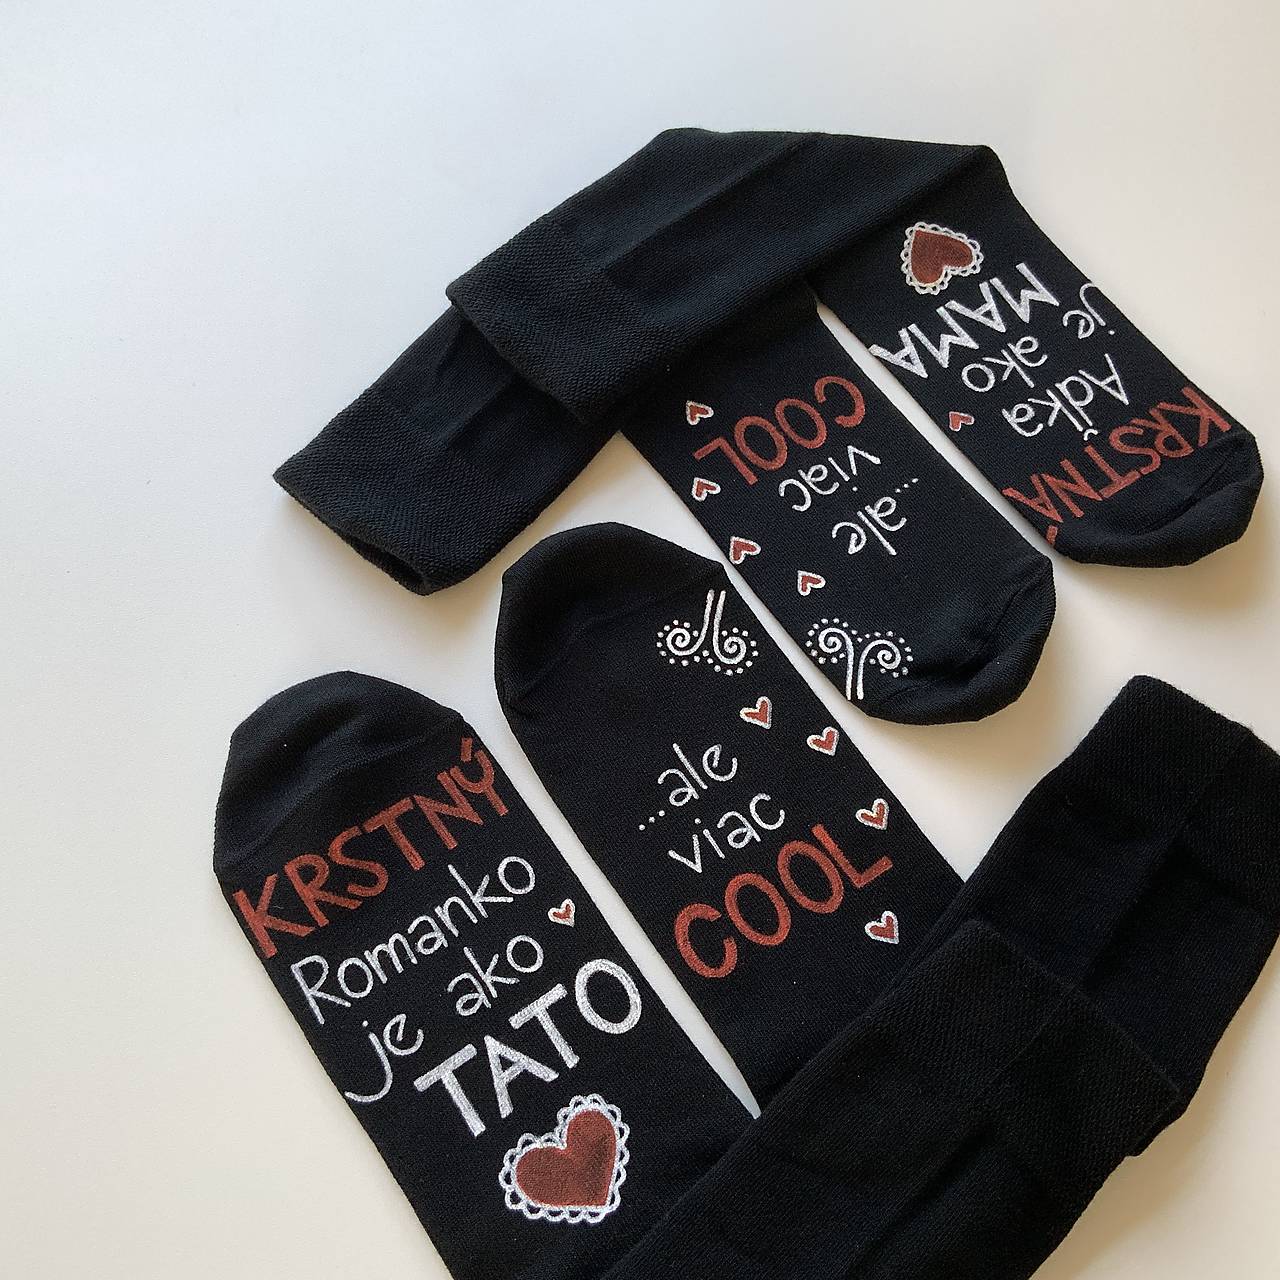 Maľované ponožky pre KRSTNÚ/KRSTNÉHO, ktorí sú výnimoční a COOL (čierne s menami (sada))